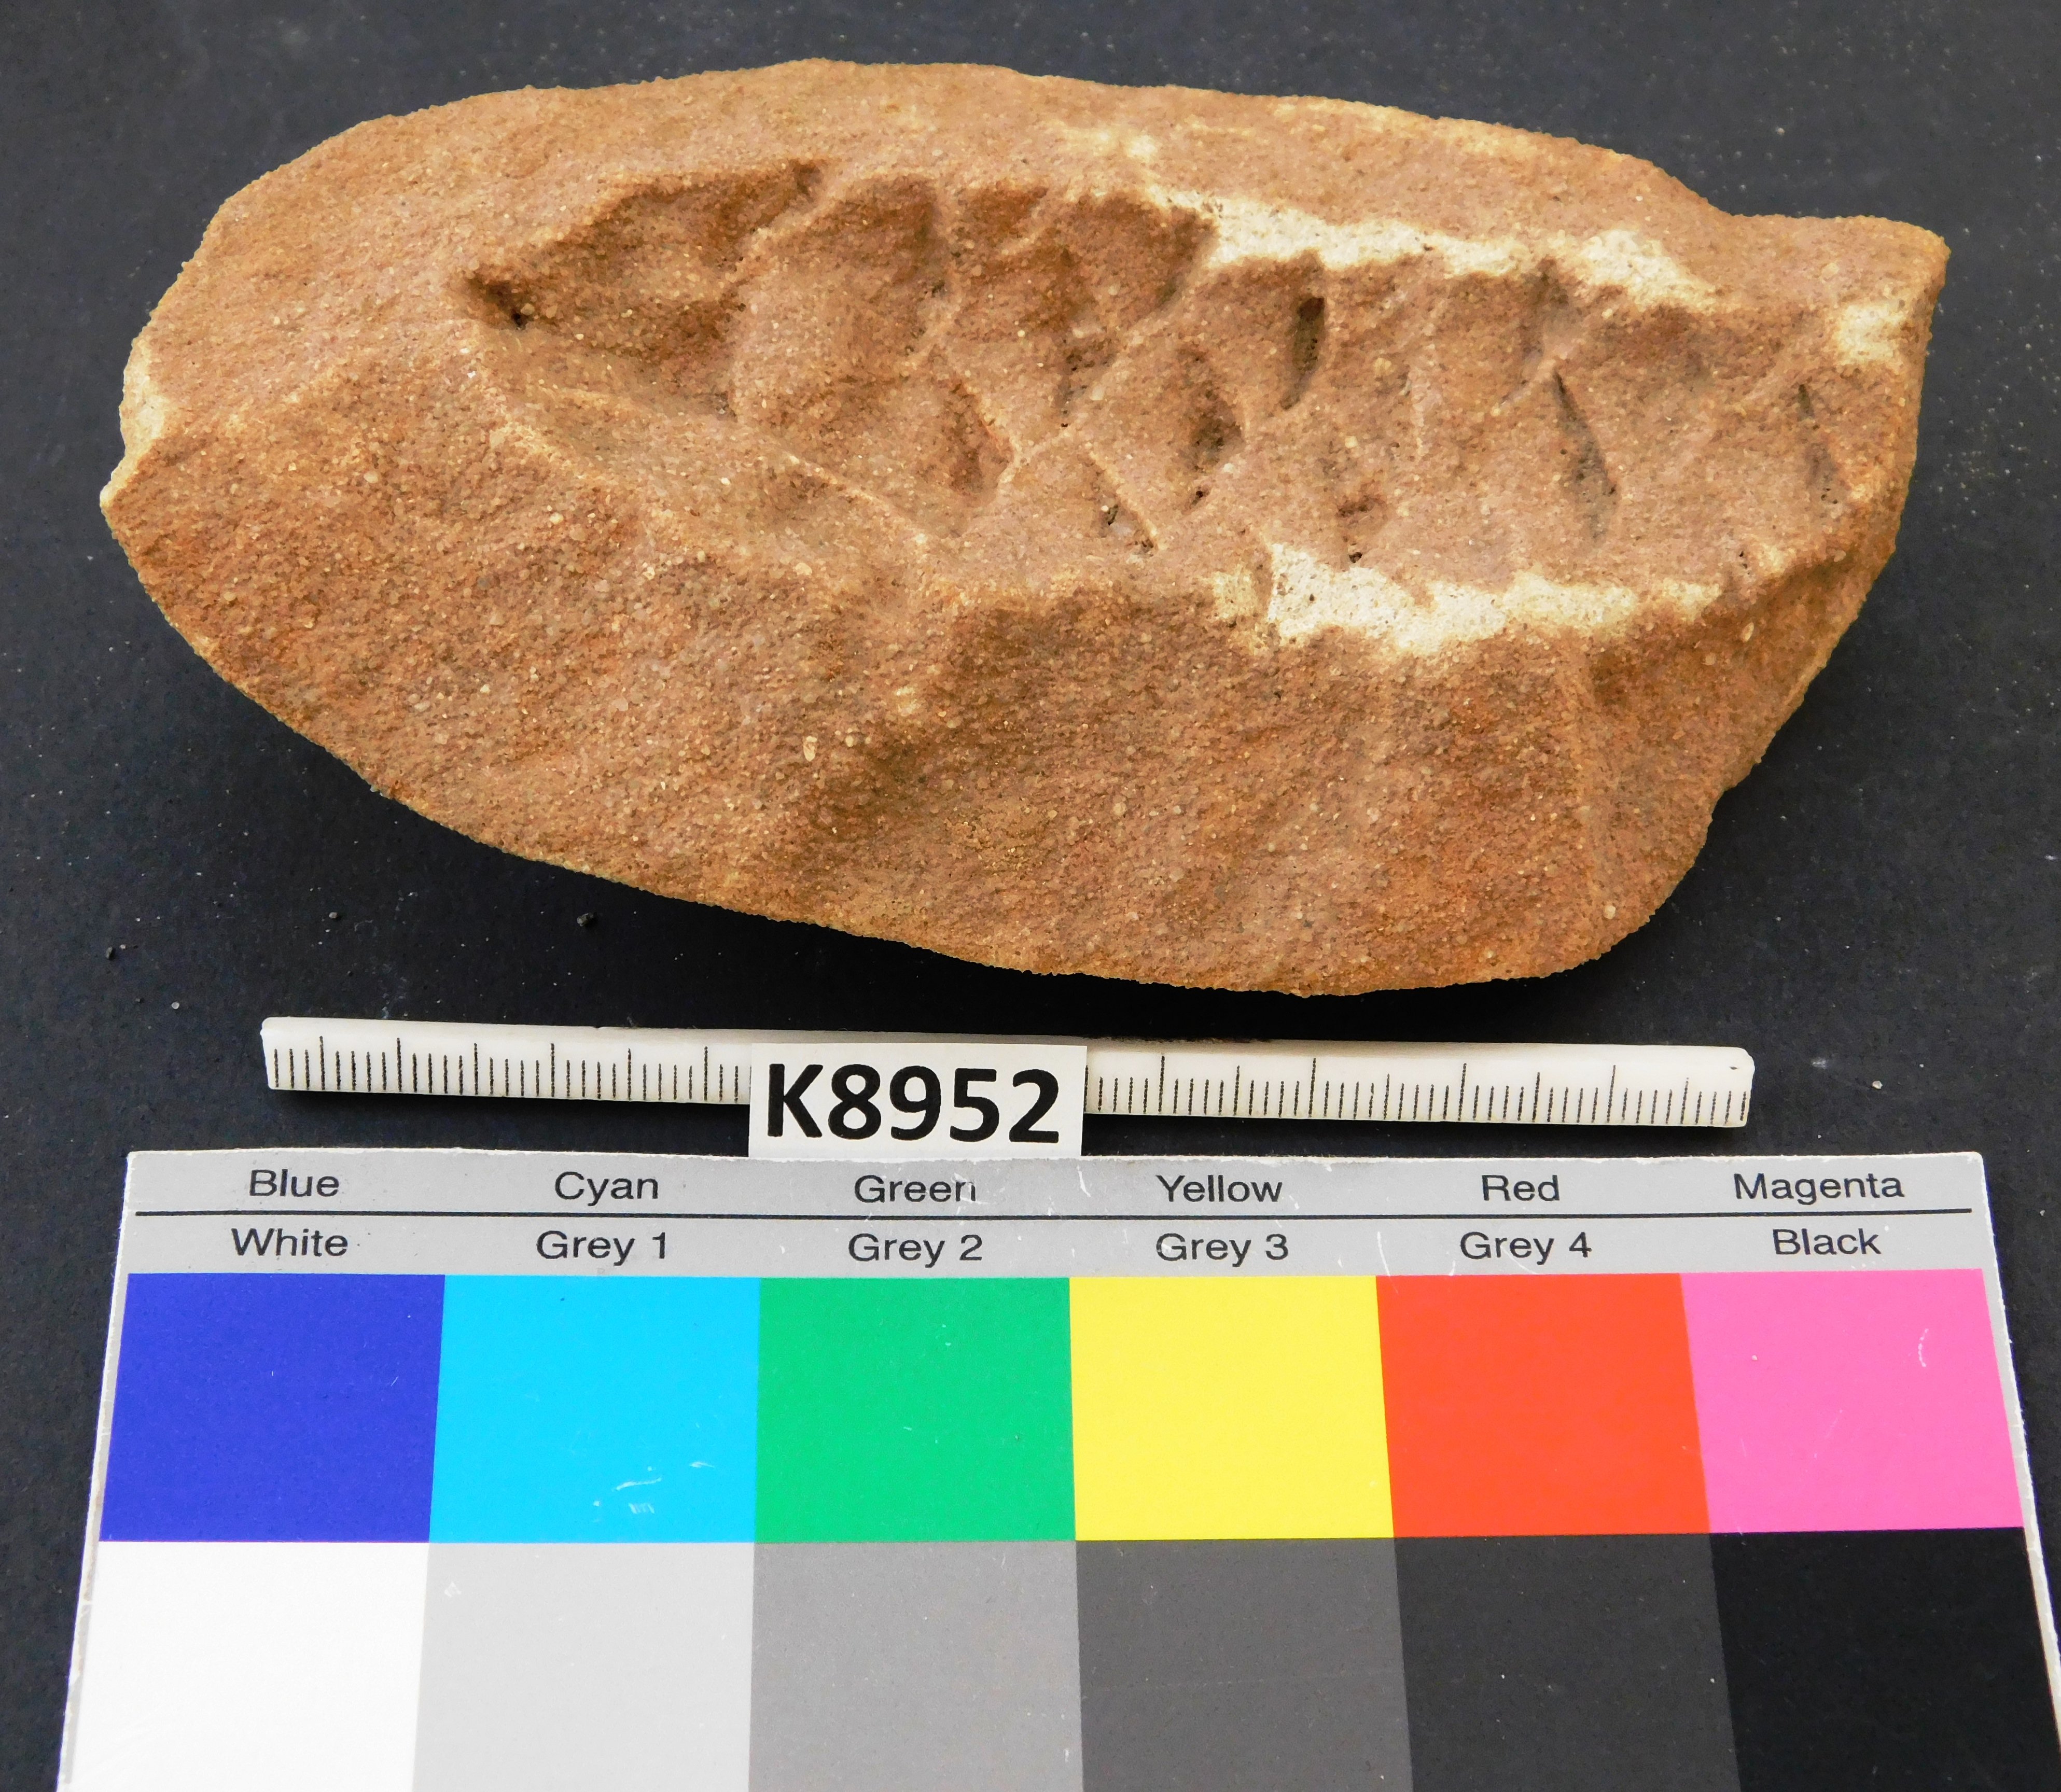 Abdruckerhaltung eines Zapfen eines fossilen Nadelbaumverwandten / Koniferenzapfen (Museum für Naturkunde Chemnitz RR-F)